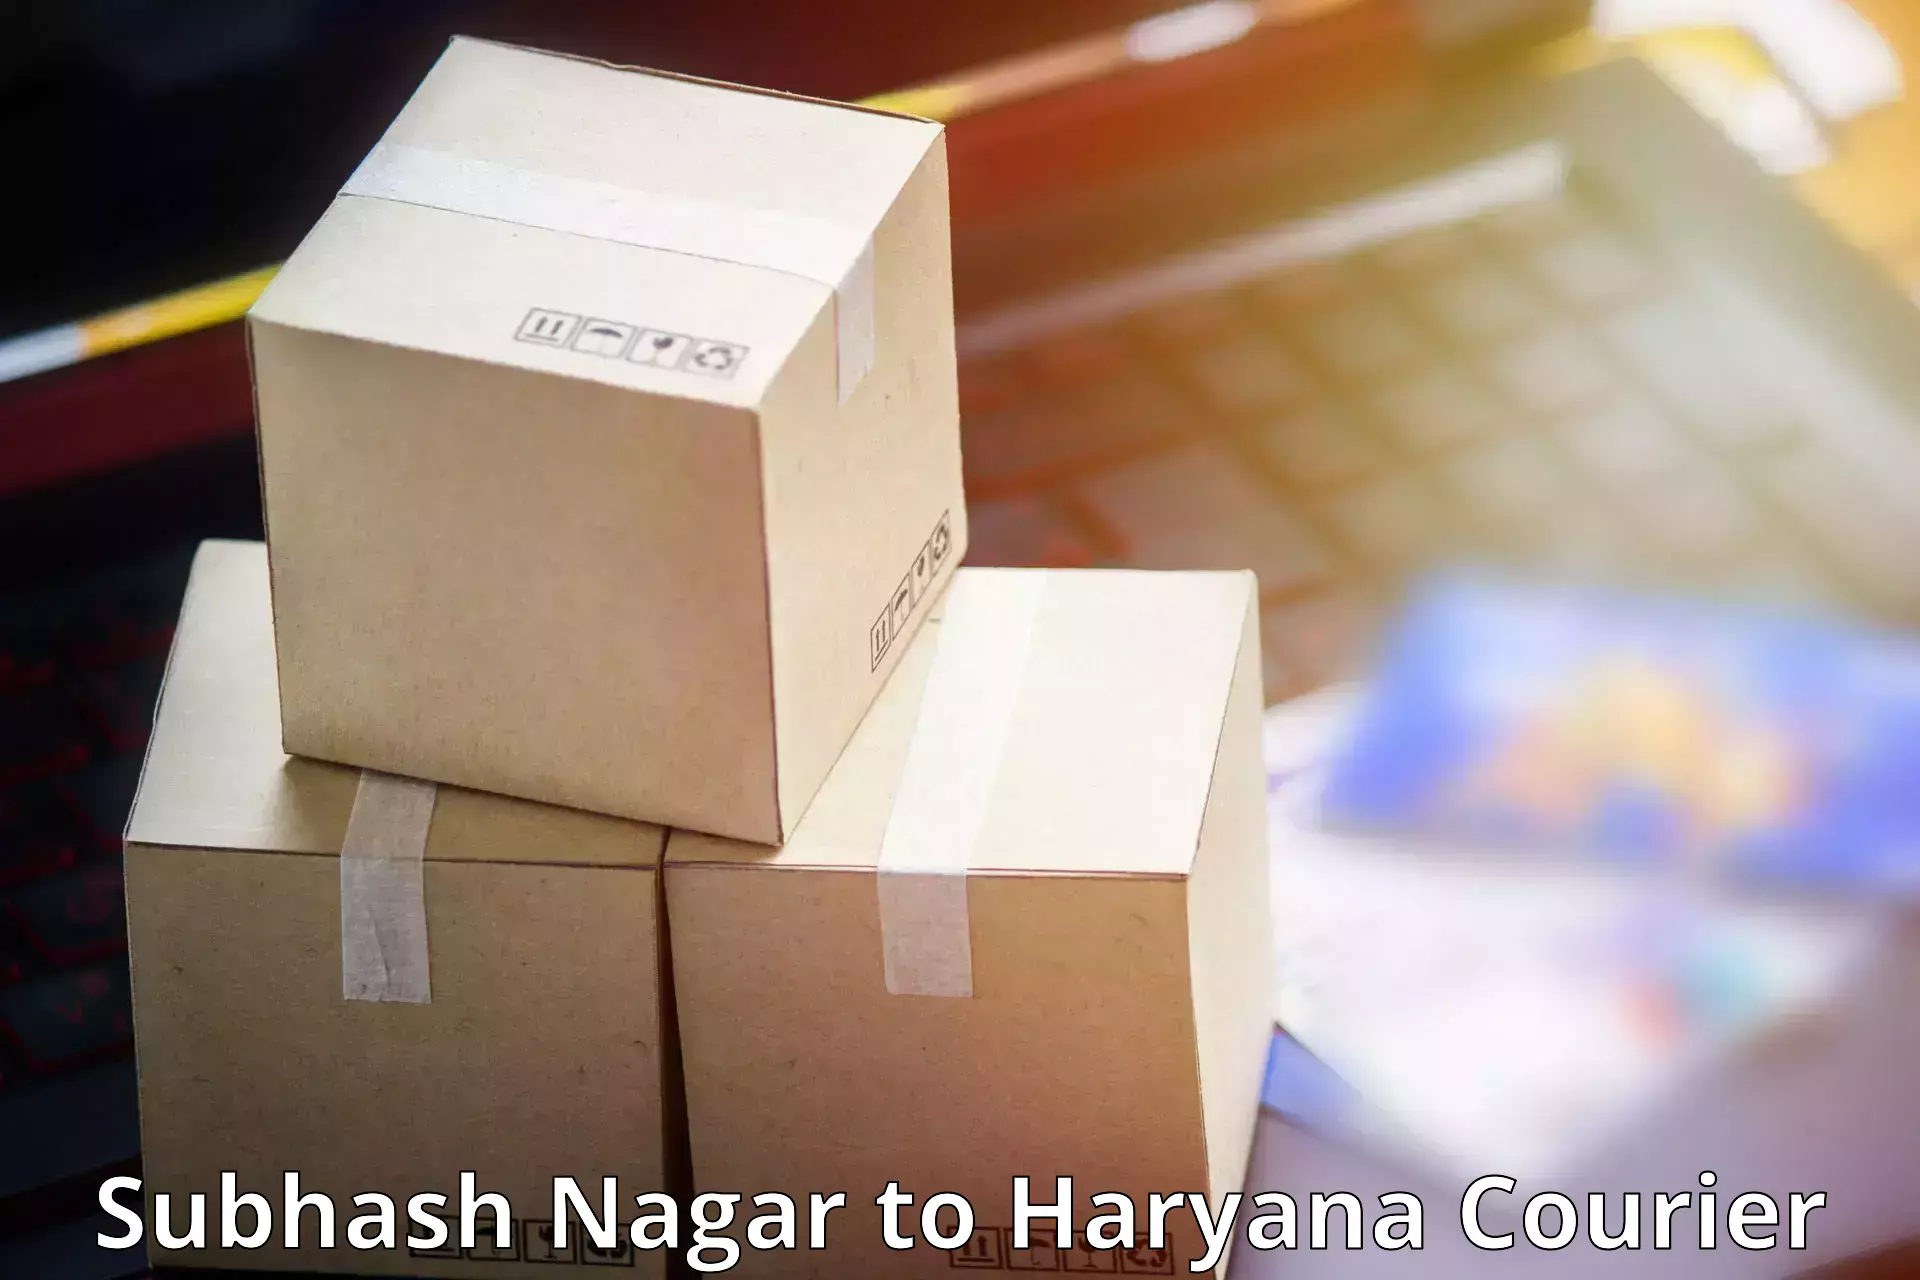 Domestic delivery options Subhash Nagar to Chaudhary Charan Singh Haryana Agricultural University Hisar